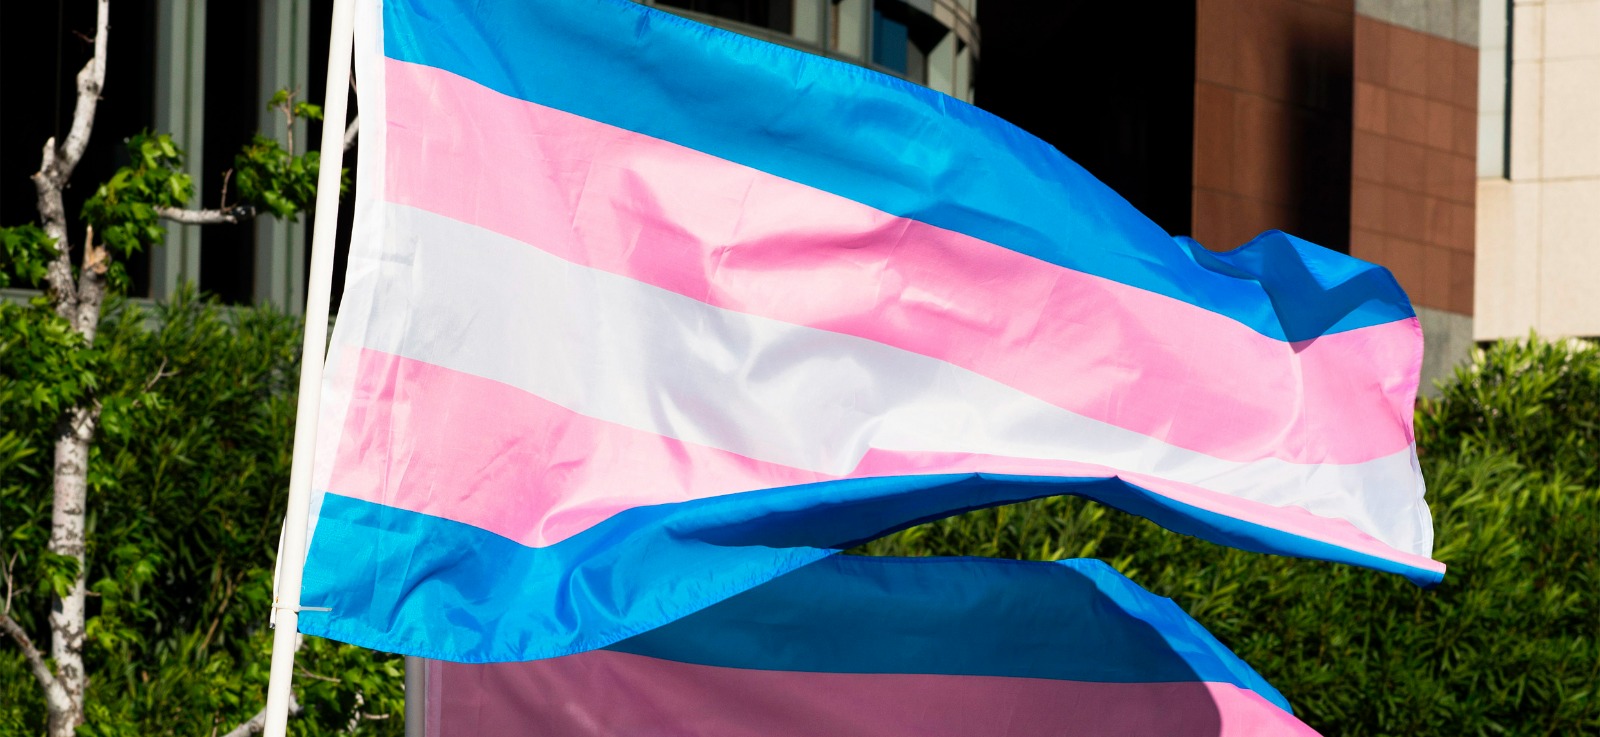 Hucam celebra Dia da Visibilidade Trans — Empresa Brasileira de